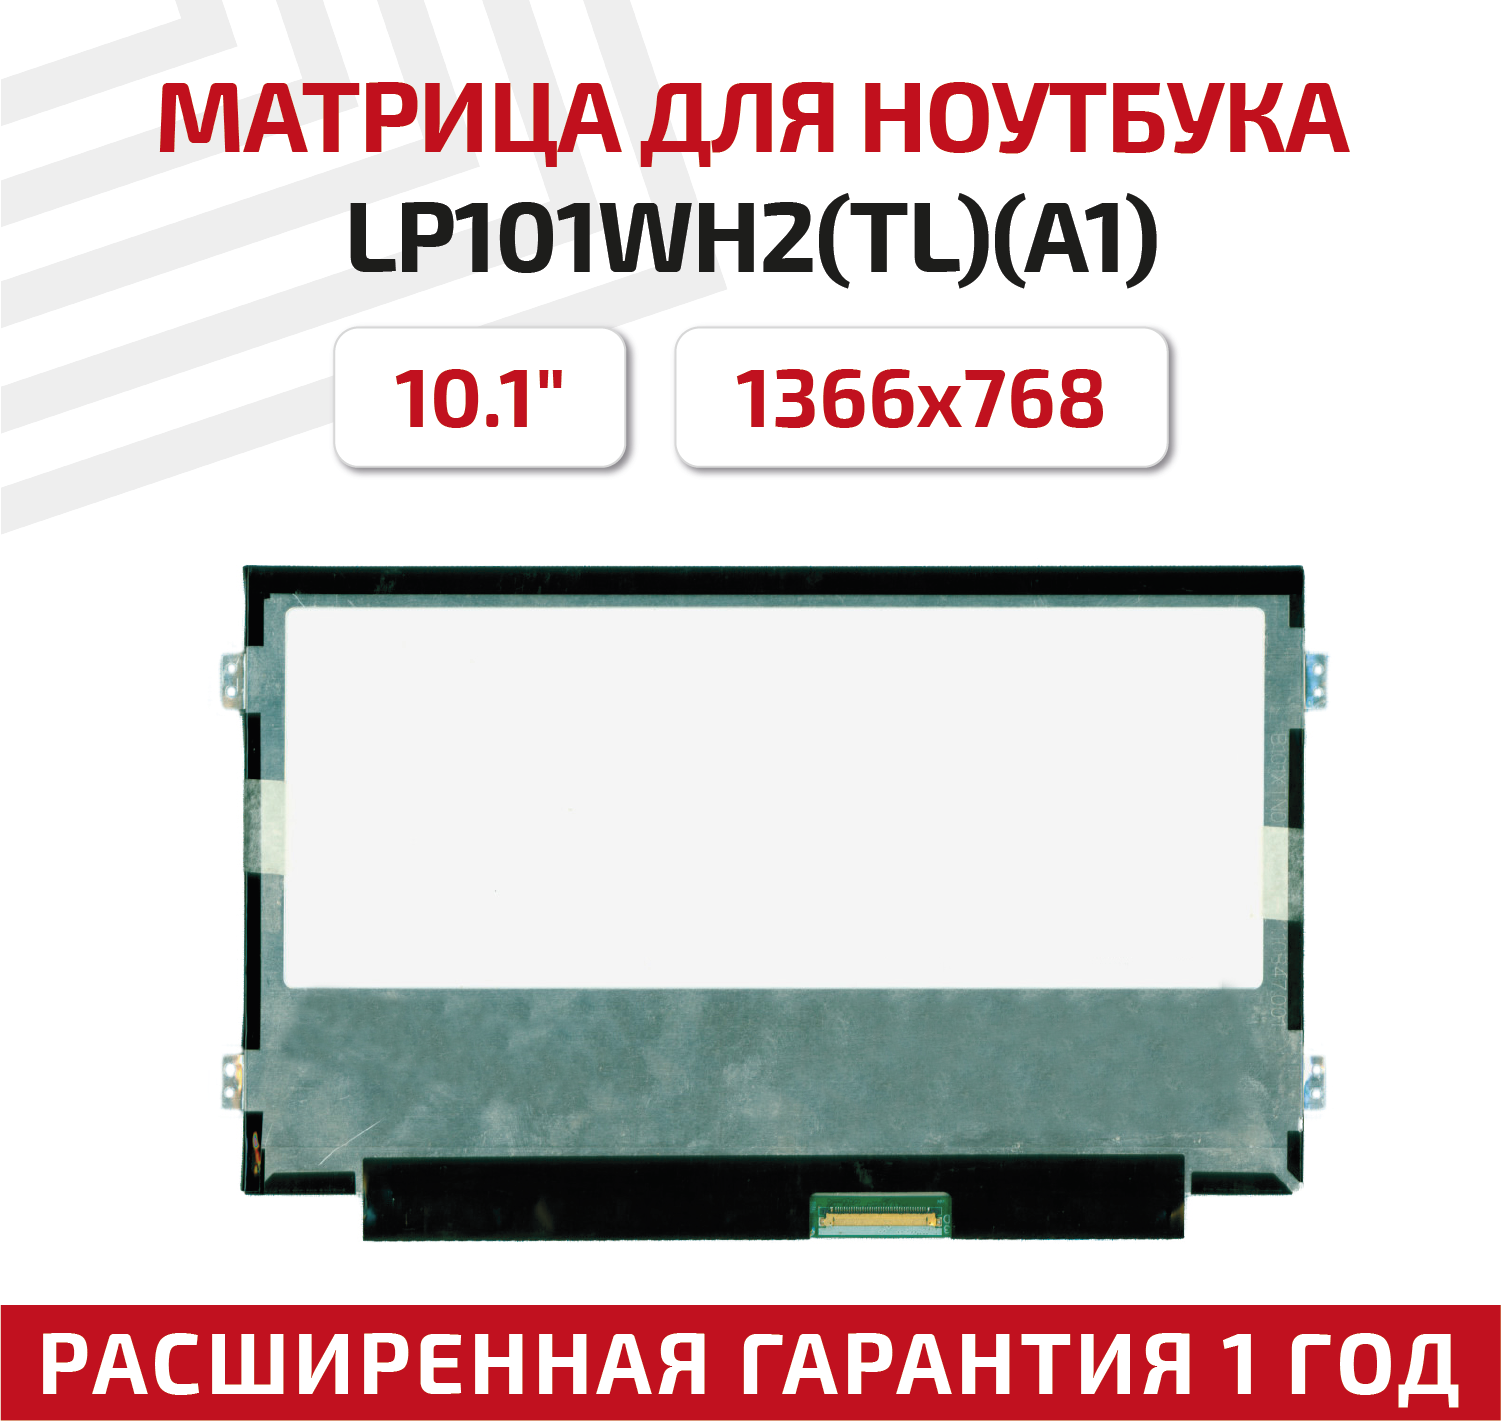 Матрица (экран) для ноутбука LP101WH2(TL)(A1), 10.1", 1366x768, Slim (тонкая), 40-pin, светодиодная (LED), глянцевая